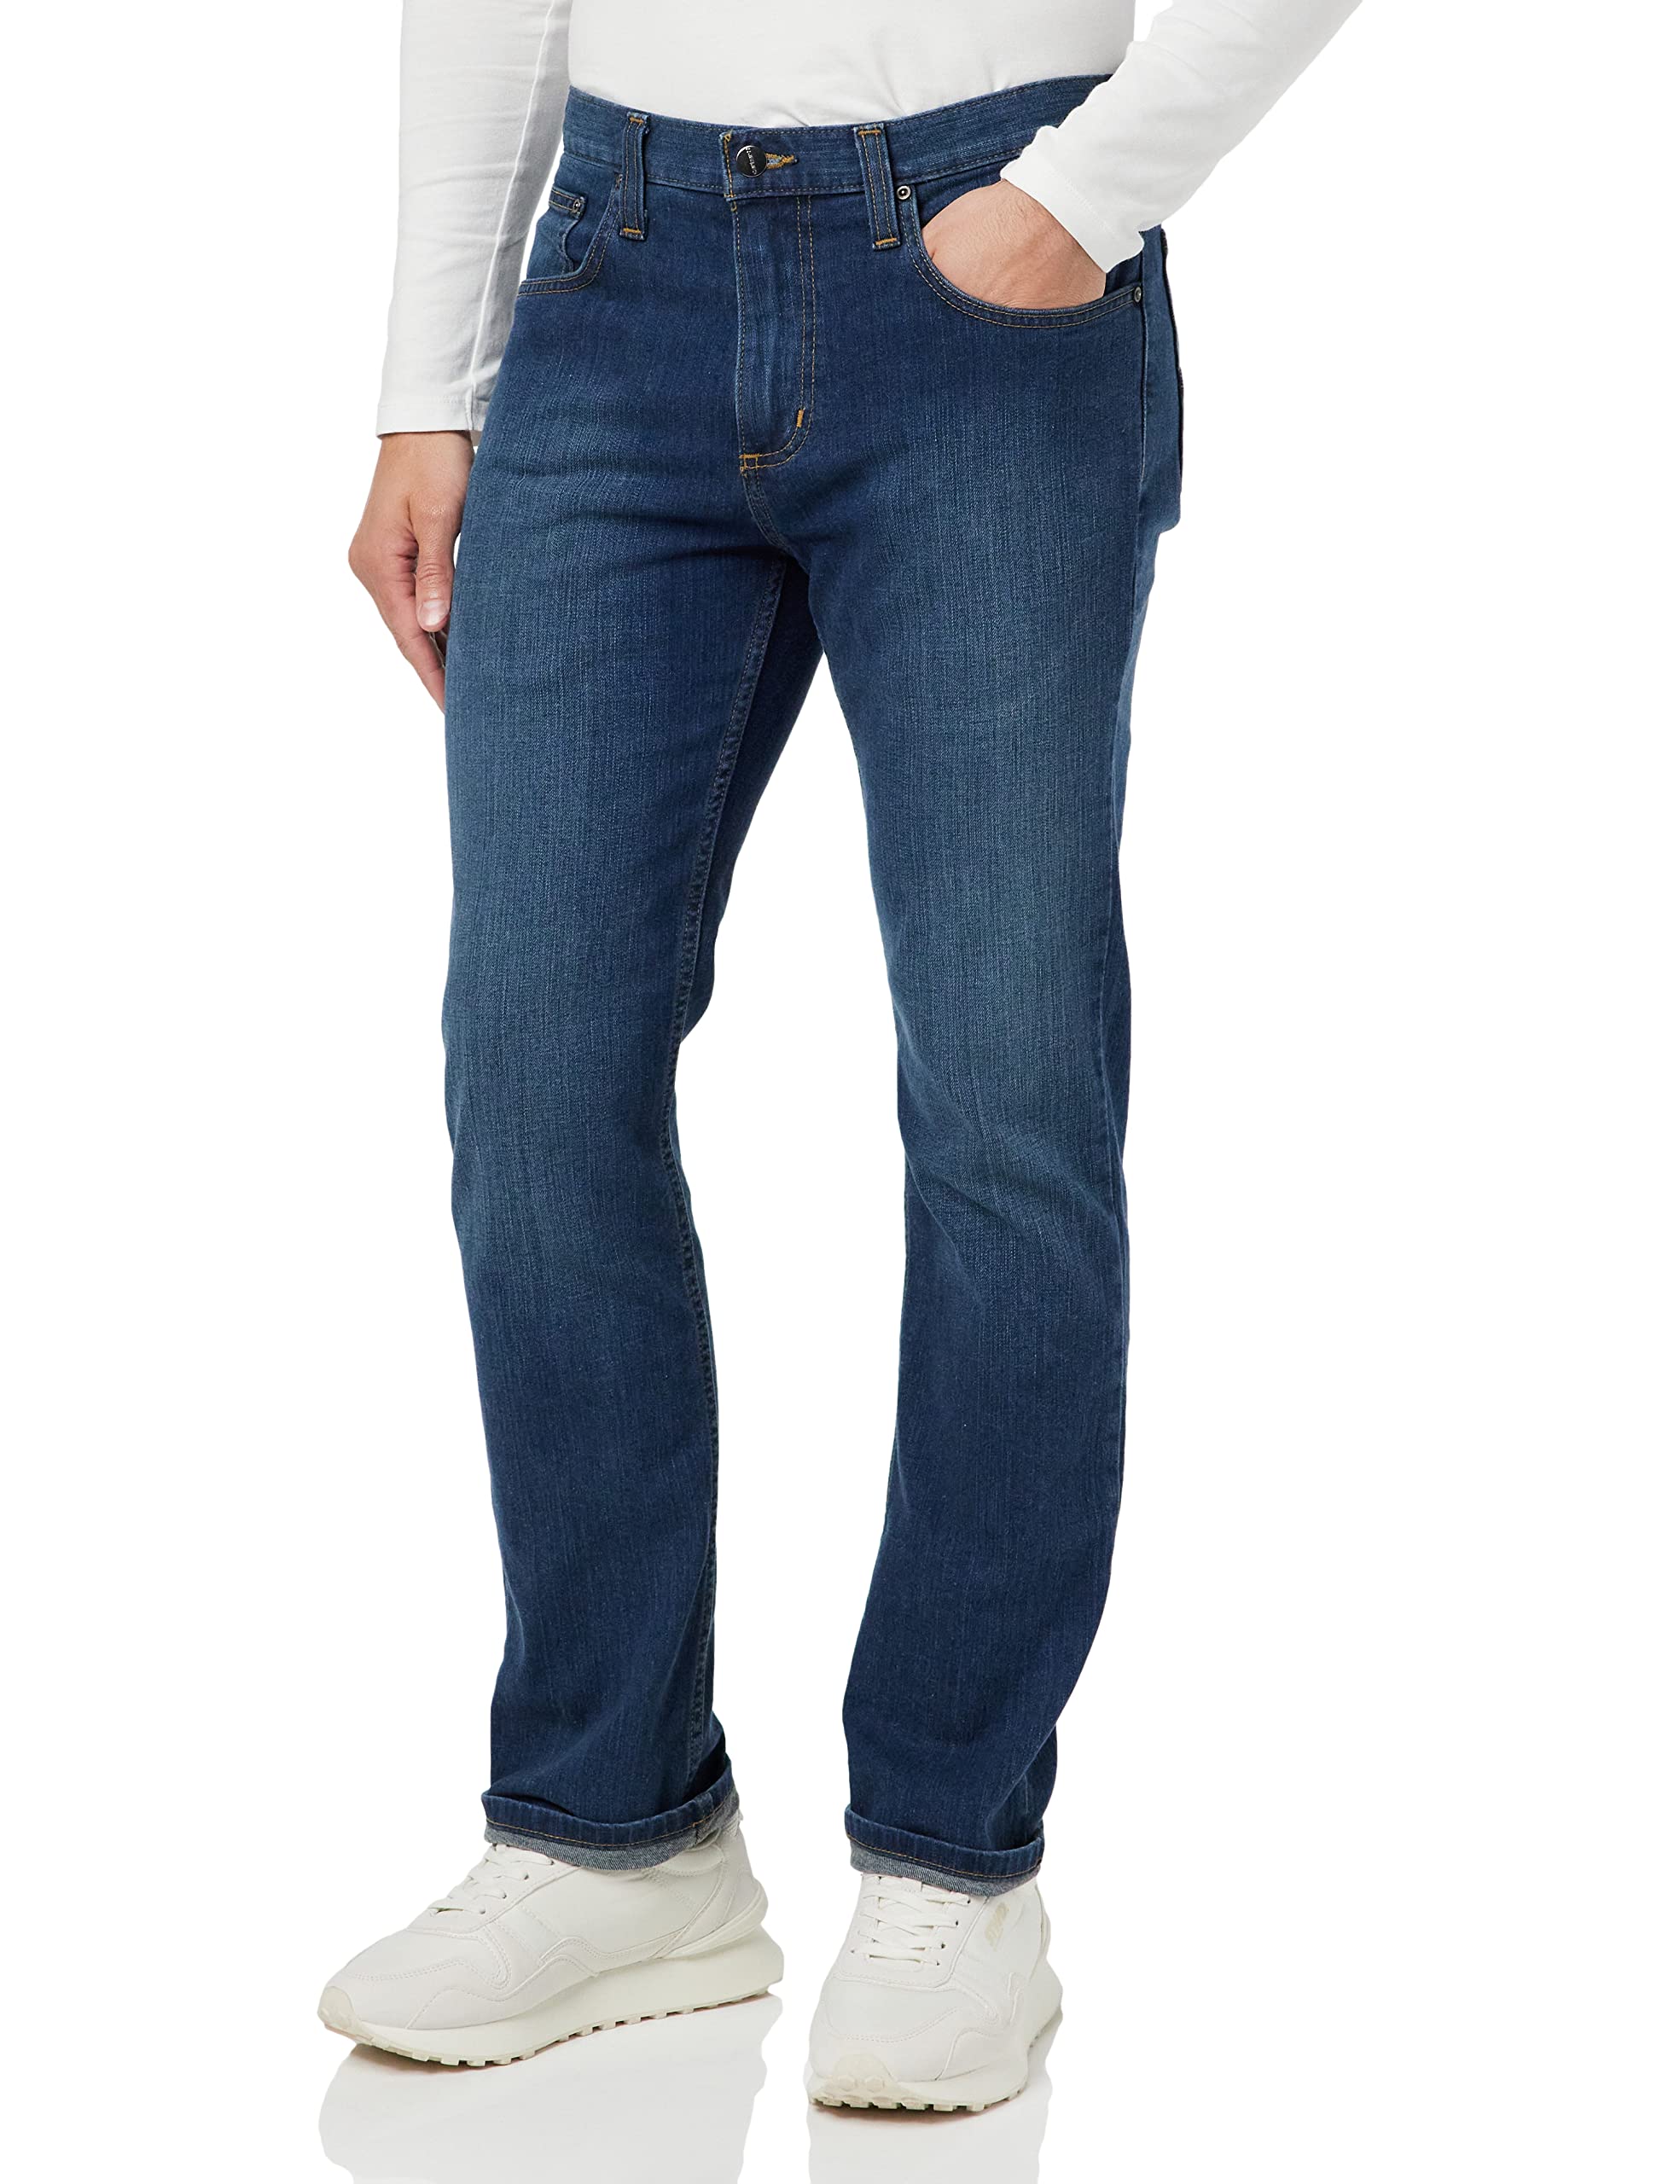 Carhartt, Herren, Rugged Flex® Jeans mit 5 Taschen, gerader Passform und schmal zulaufendem Bein, Superior, W31/L34